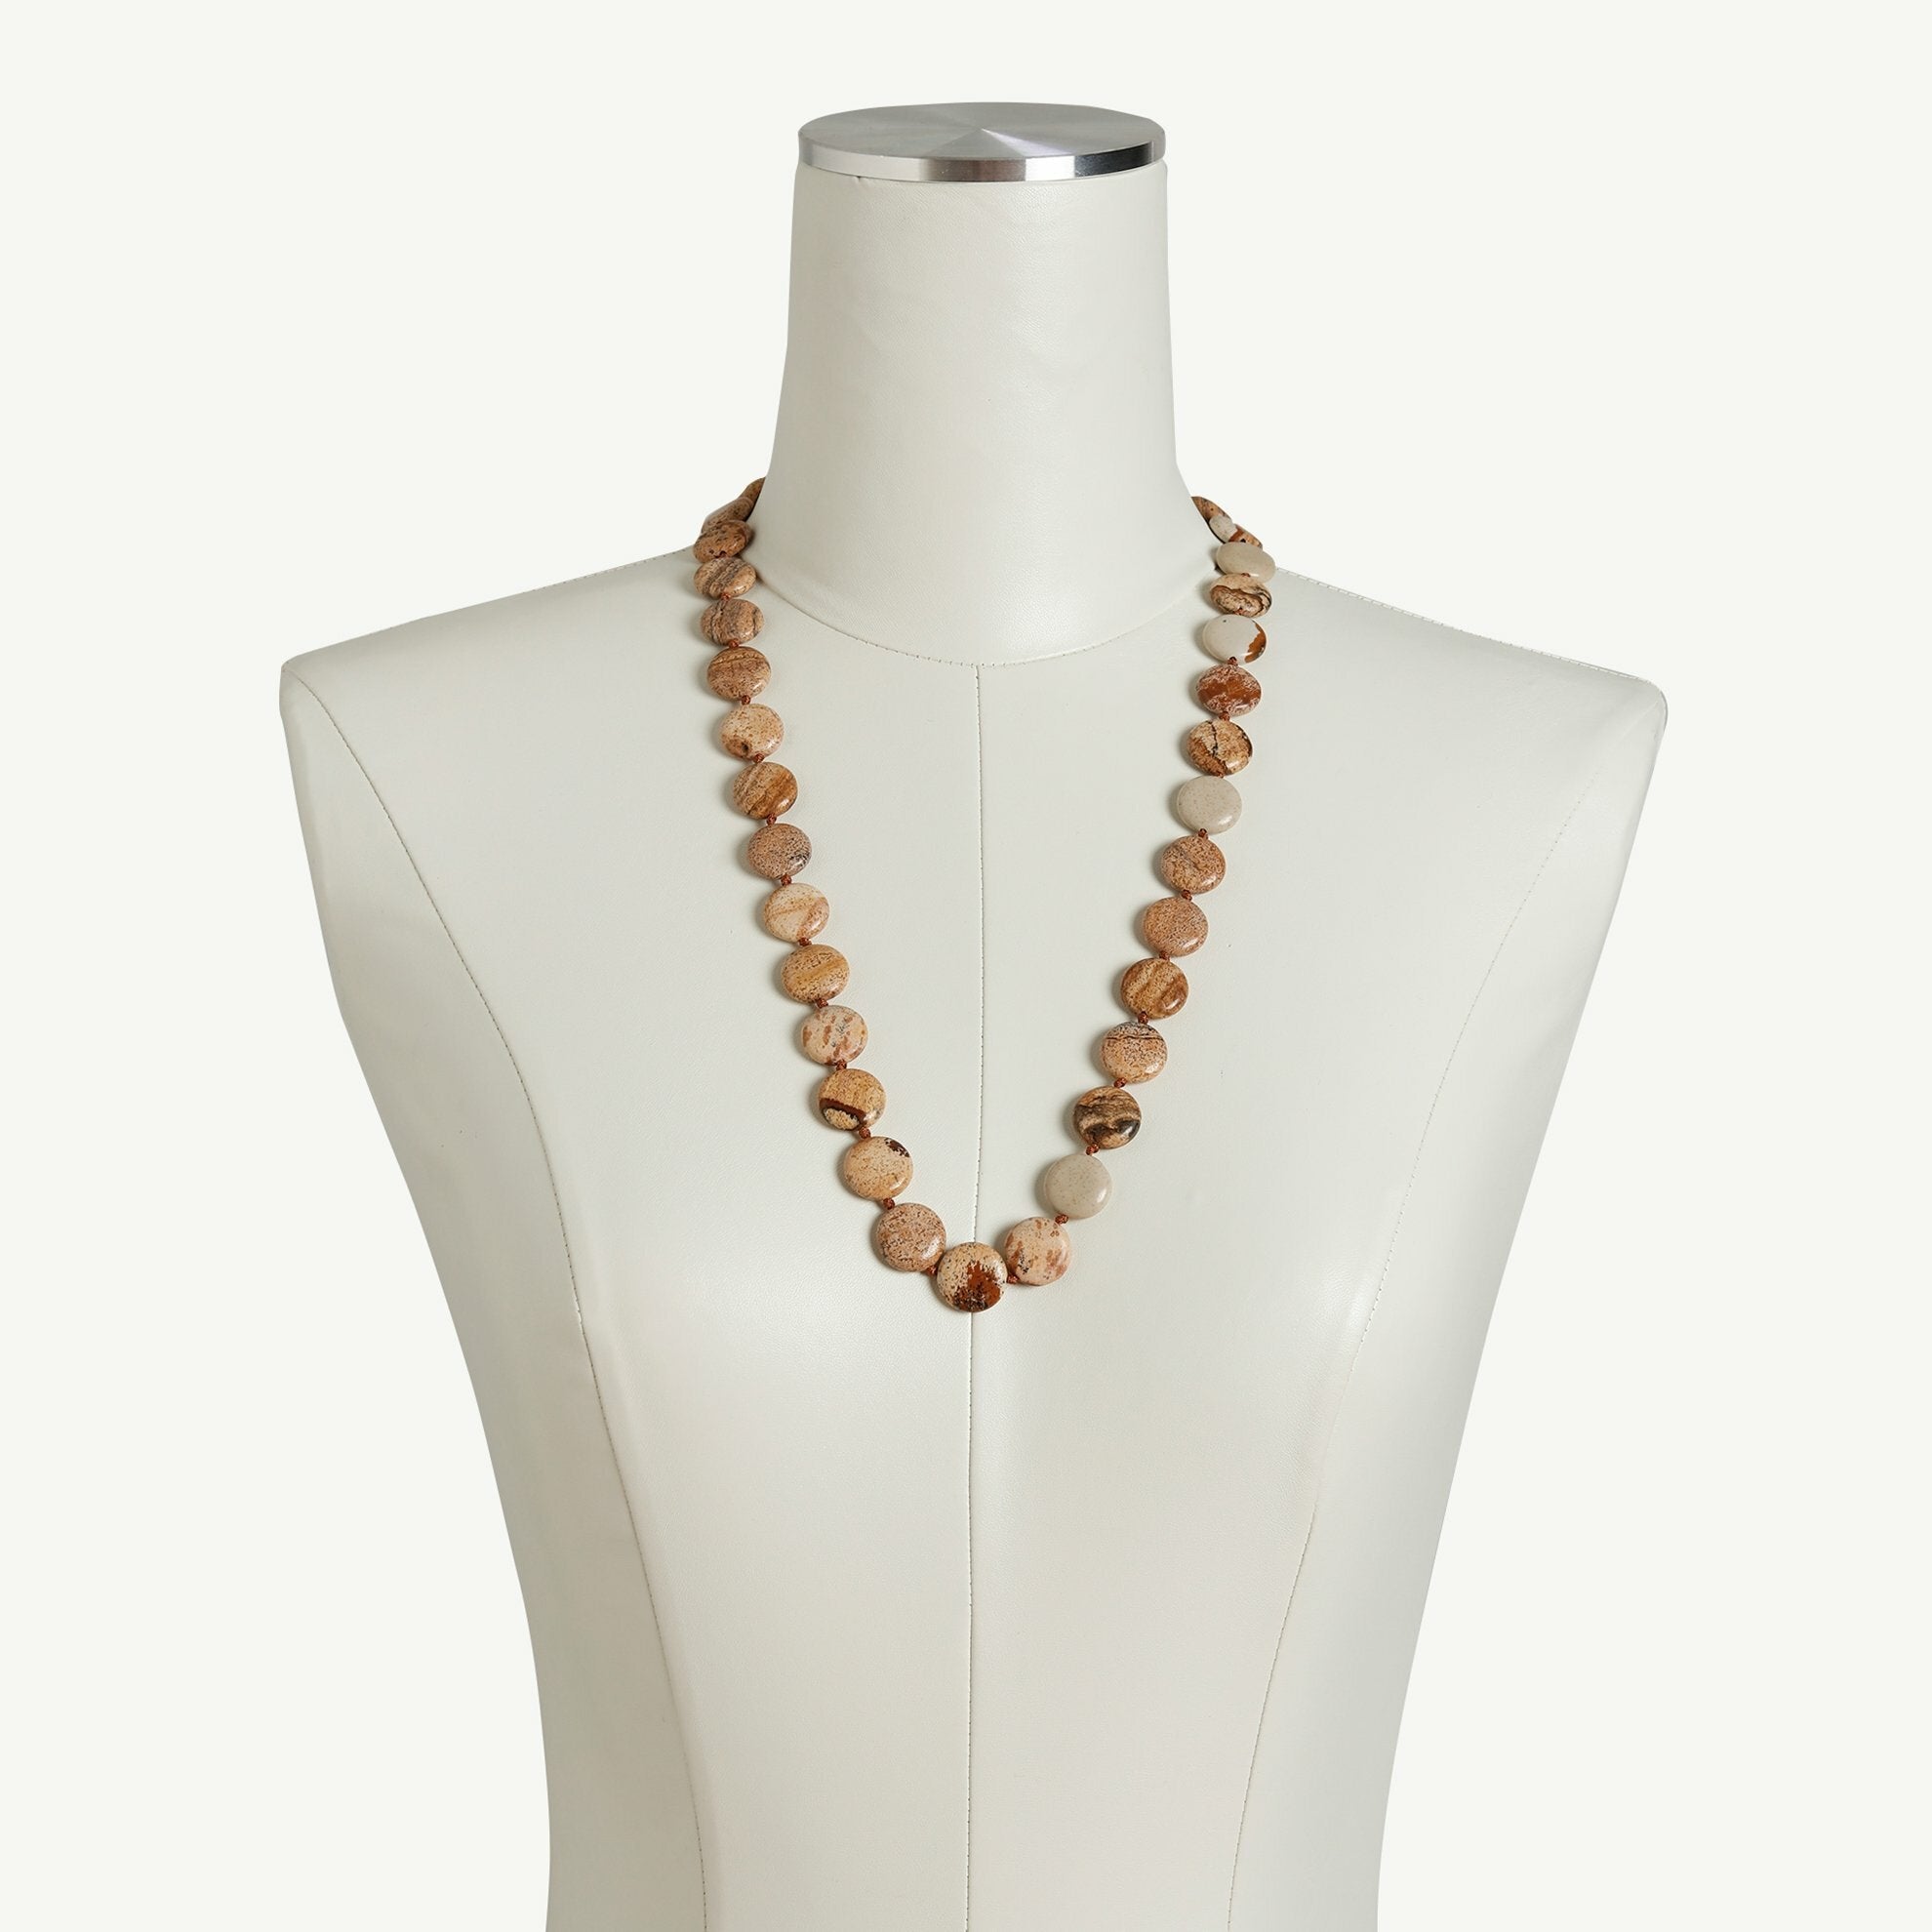 Jasper stone necklace on a dressmaker.